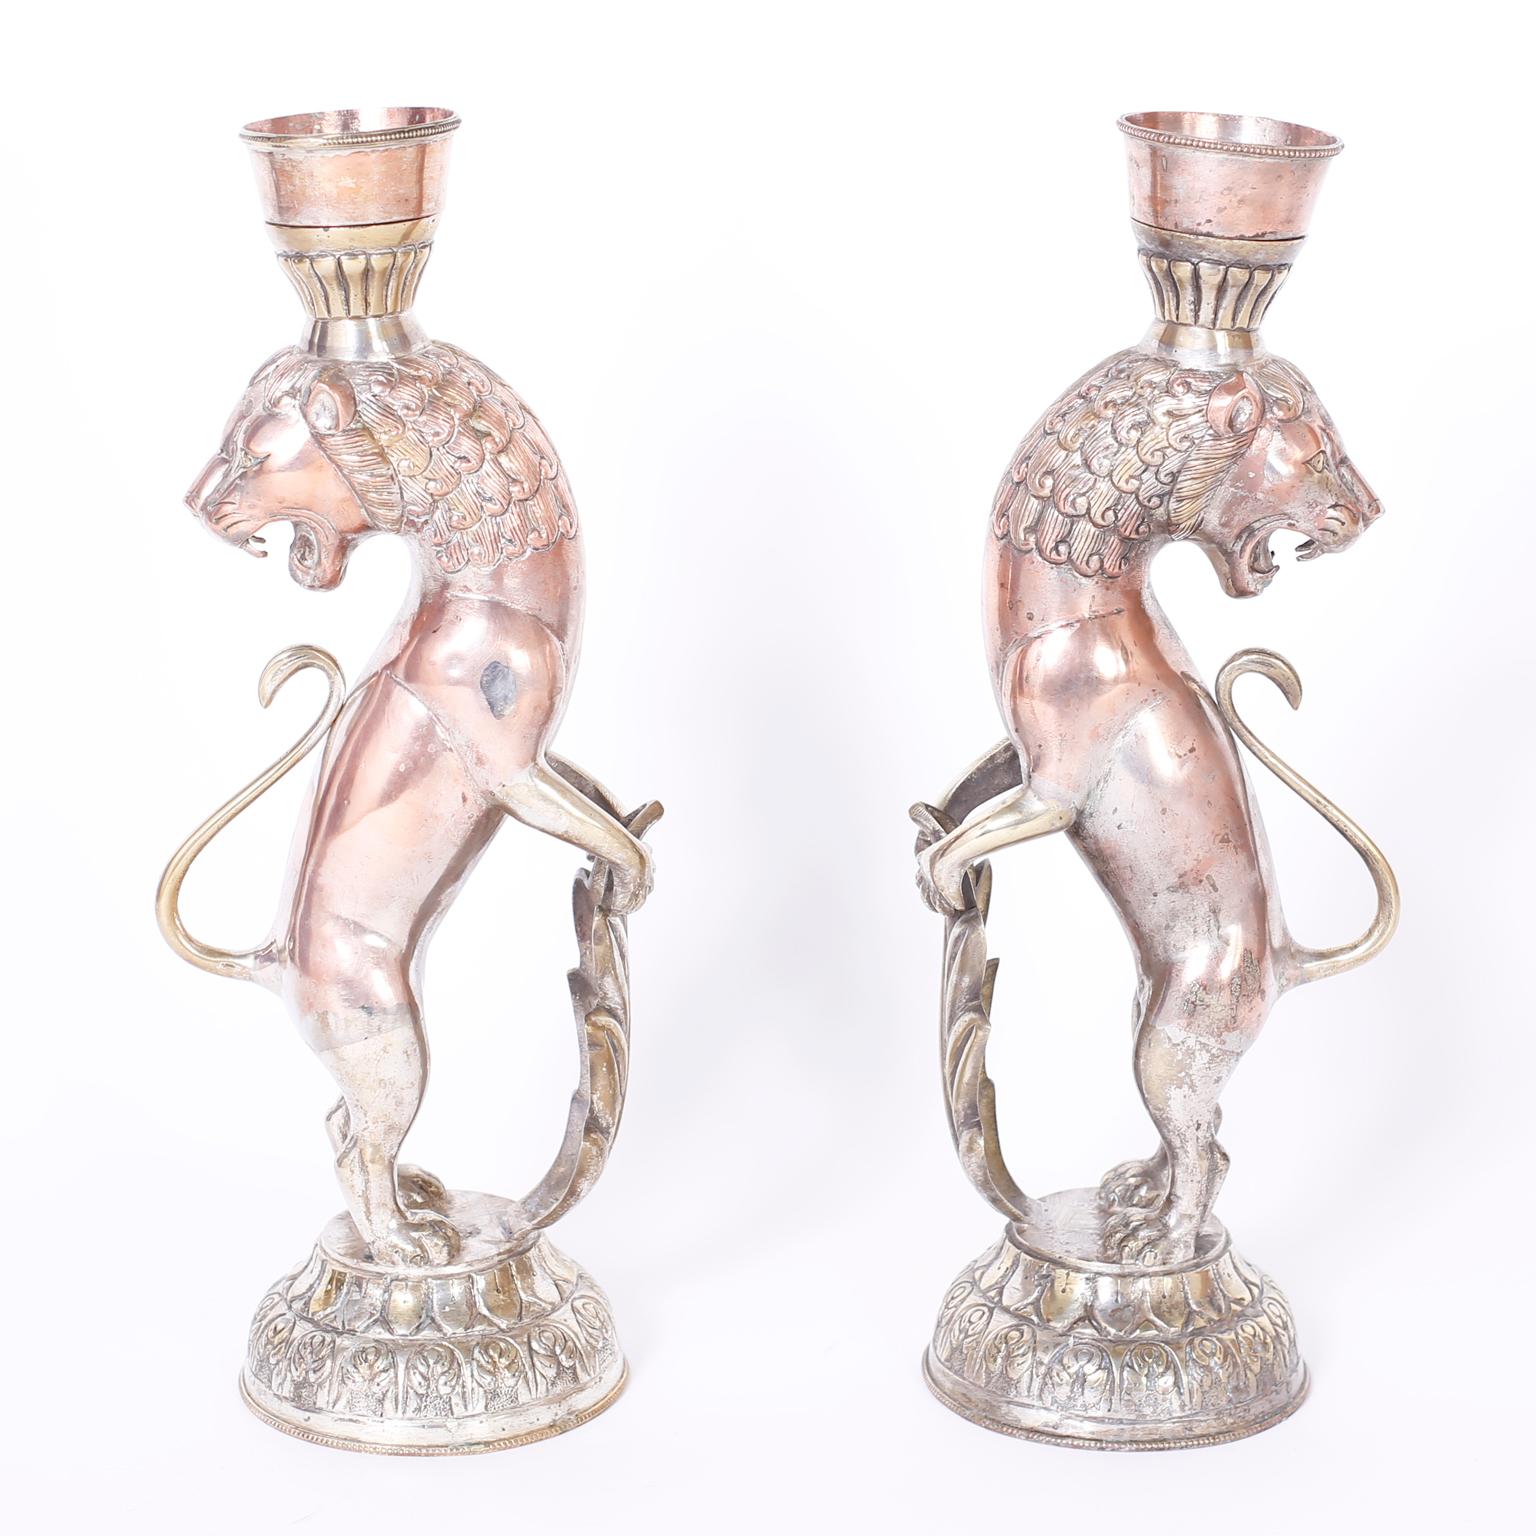 Ancienne paire de chandeliers marocains en forme de lion, fabriqués en cuivre et en laiton avec une finition argentée, maintenant usés à la perfection.